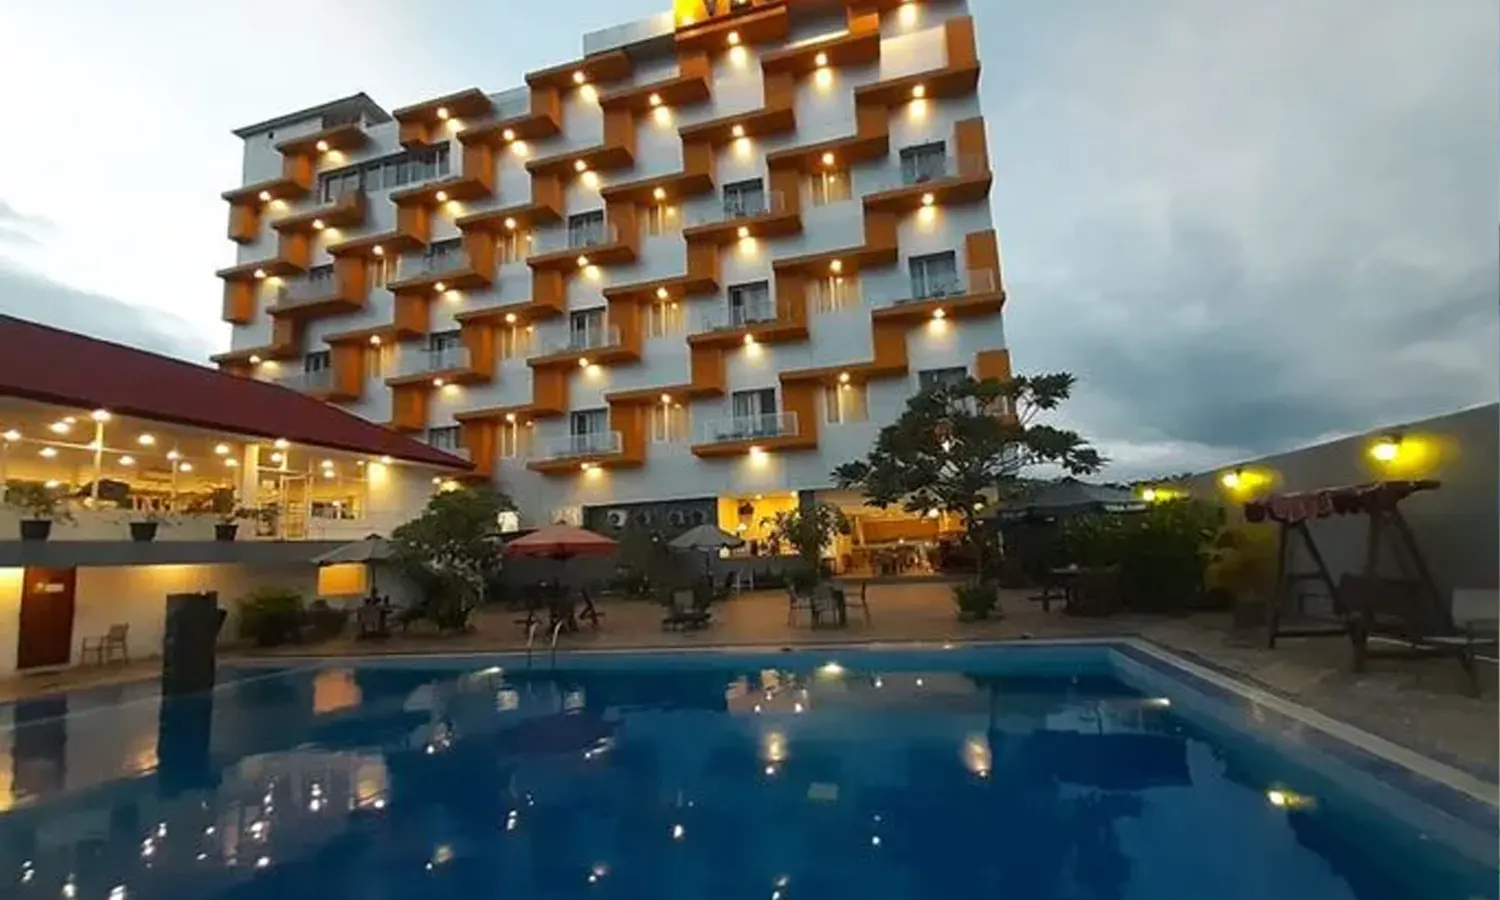 7 Rekomendasi Hotel di Sorong, Papua Barat Terbaik Parboaboa